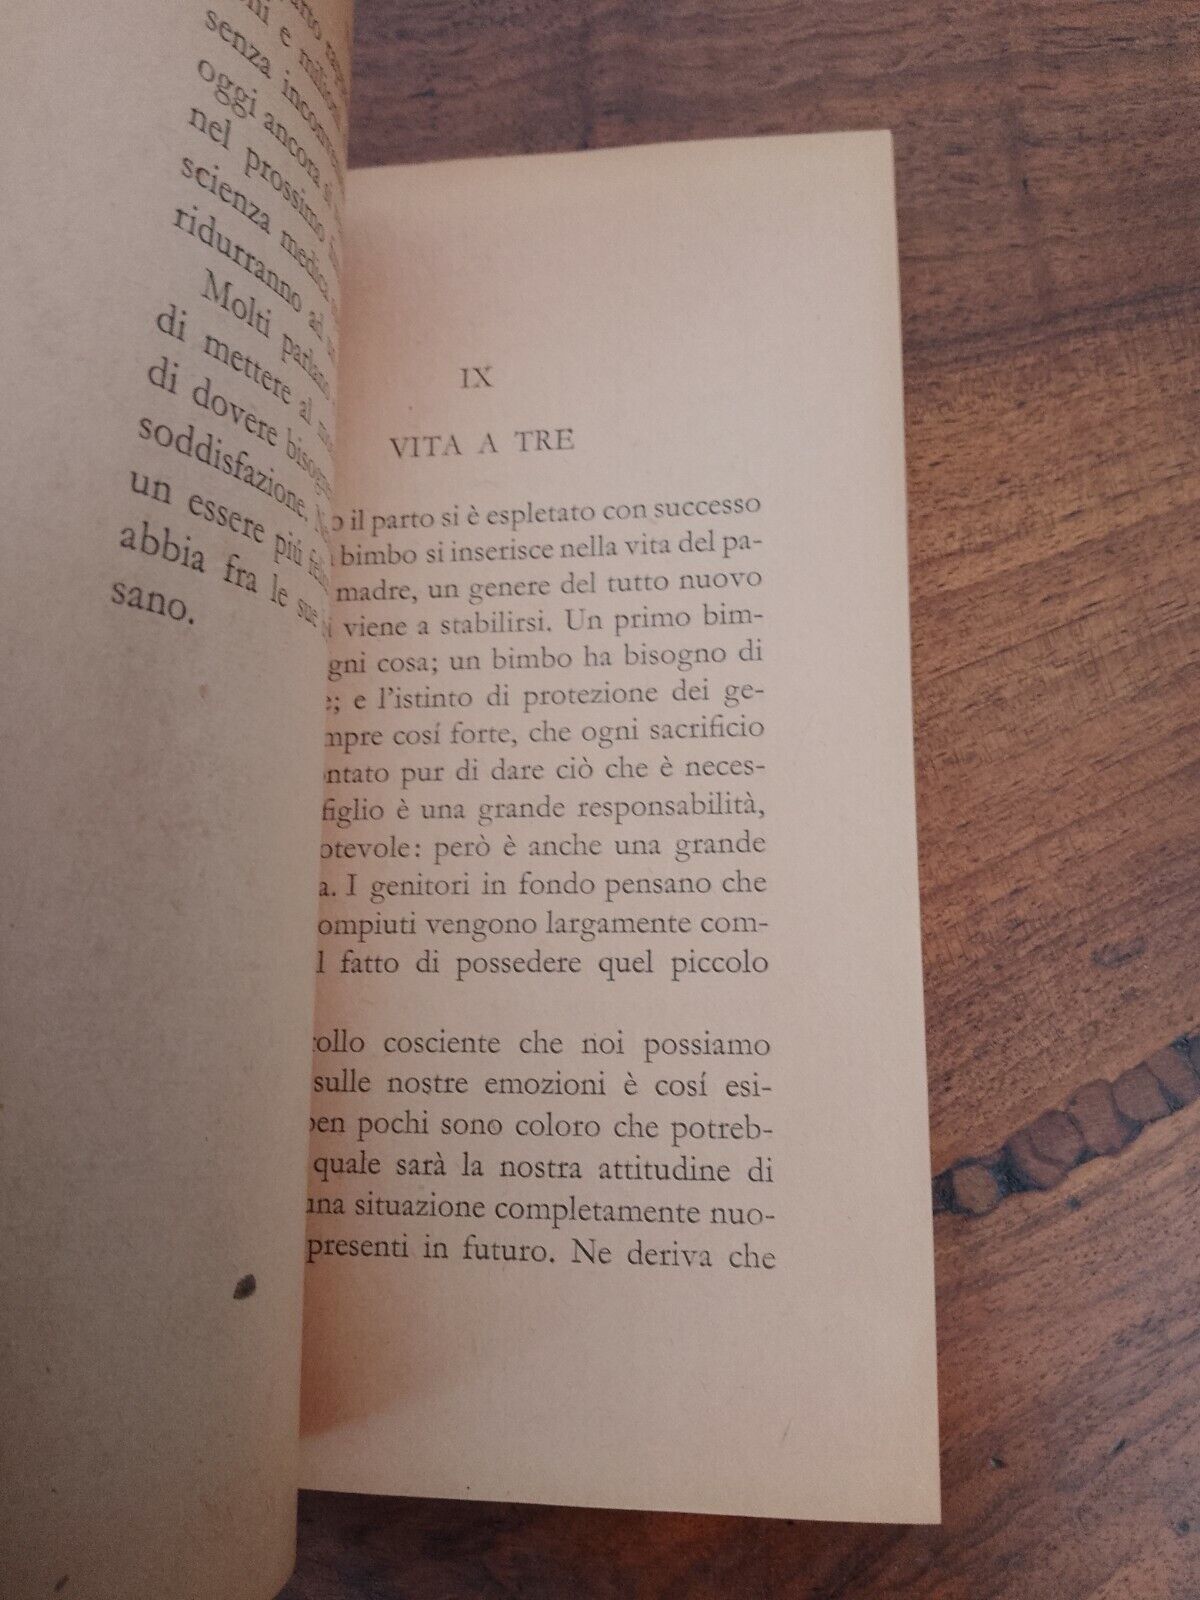 Victor Tempest, La tecnica del sesso, Mondadori